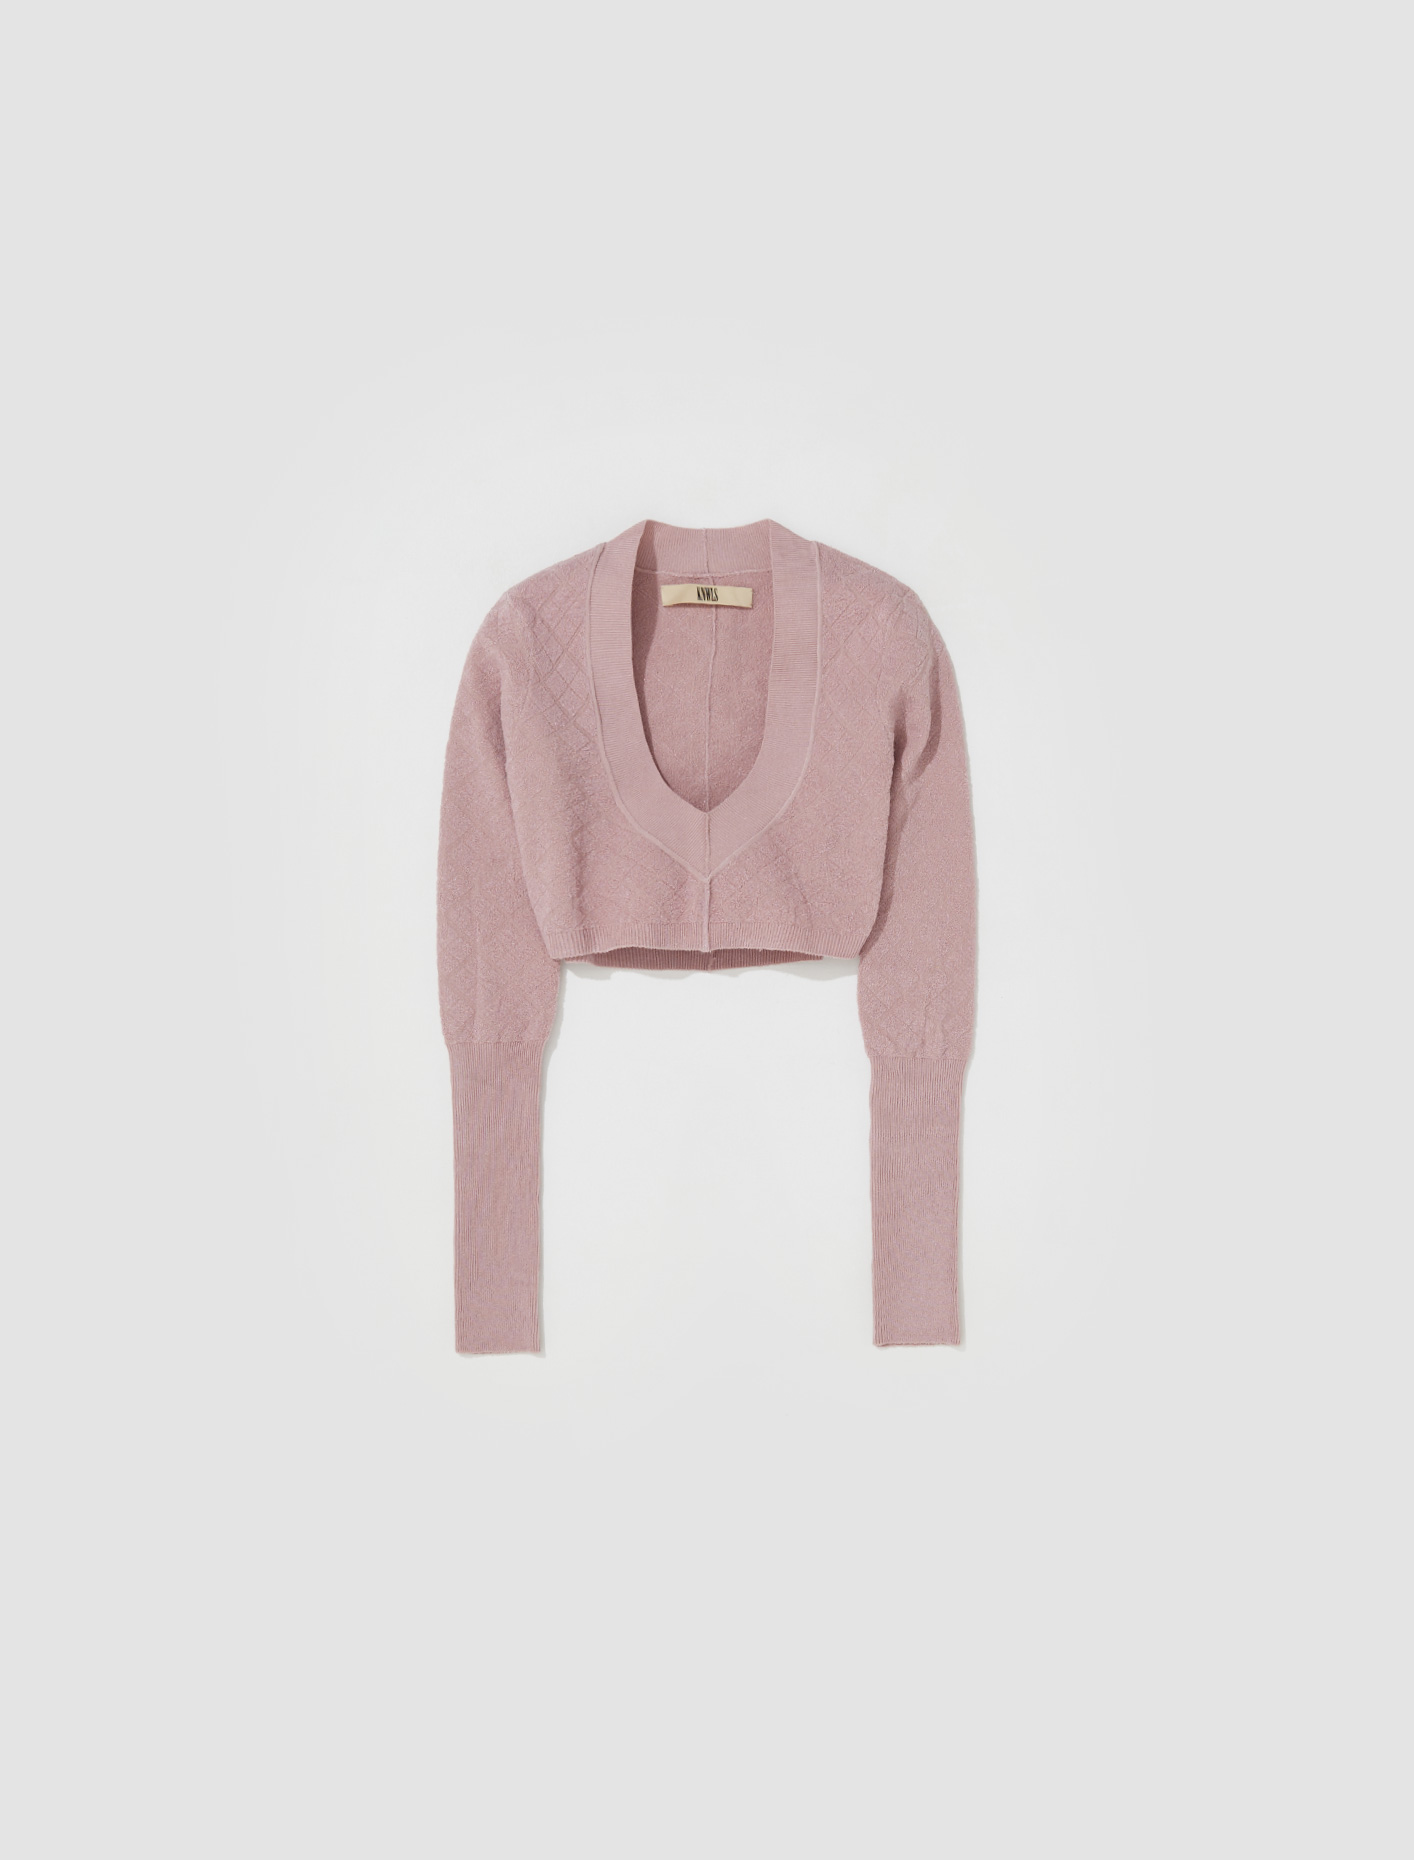 KNWLS Cali Knit Jumper in Pink | Voo Store Berlin | Worldwide Shipping